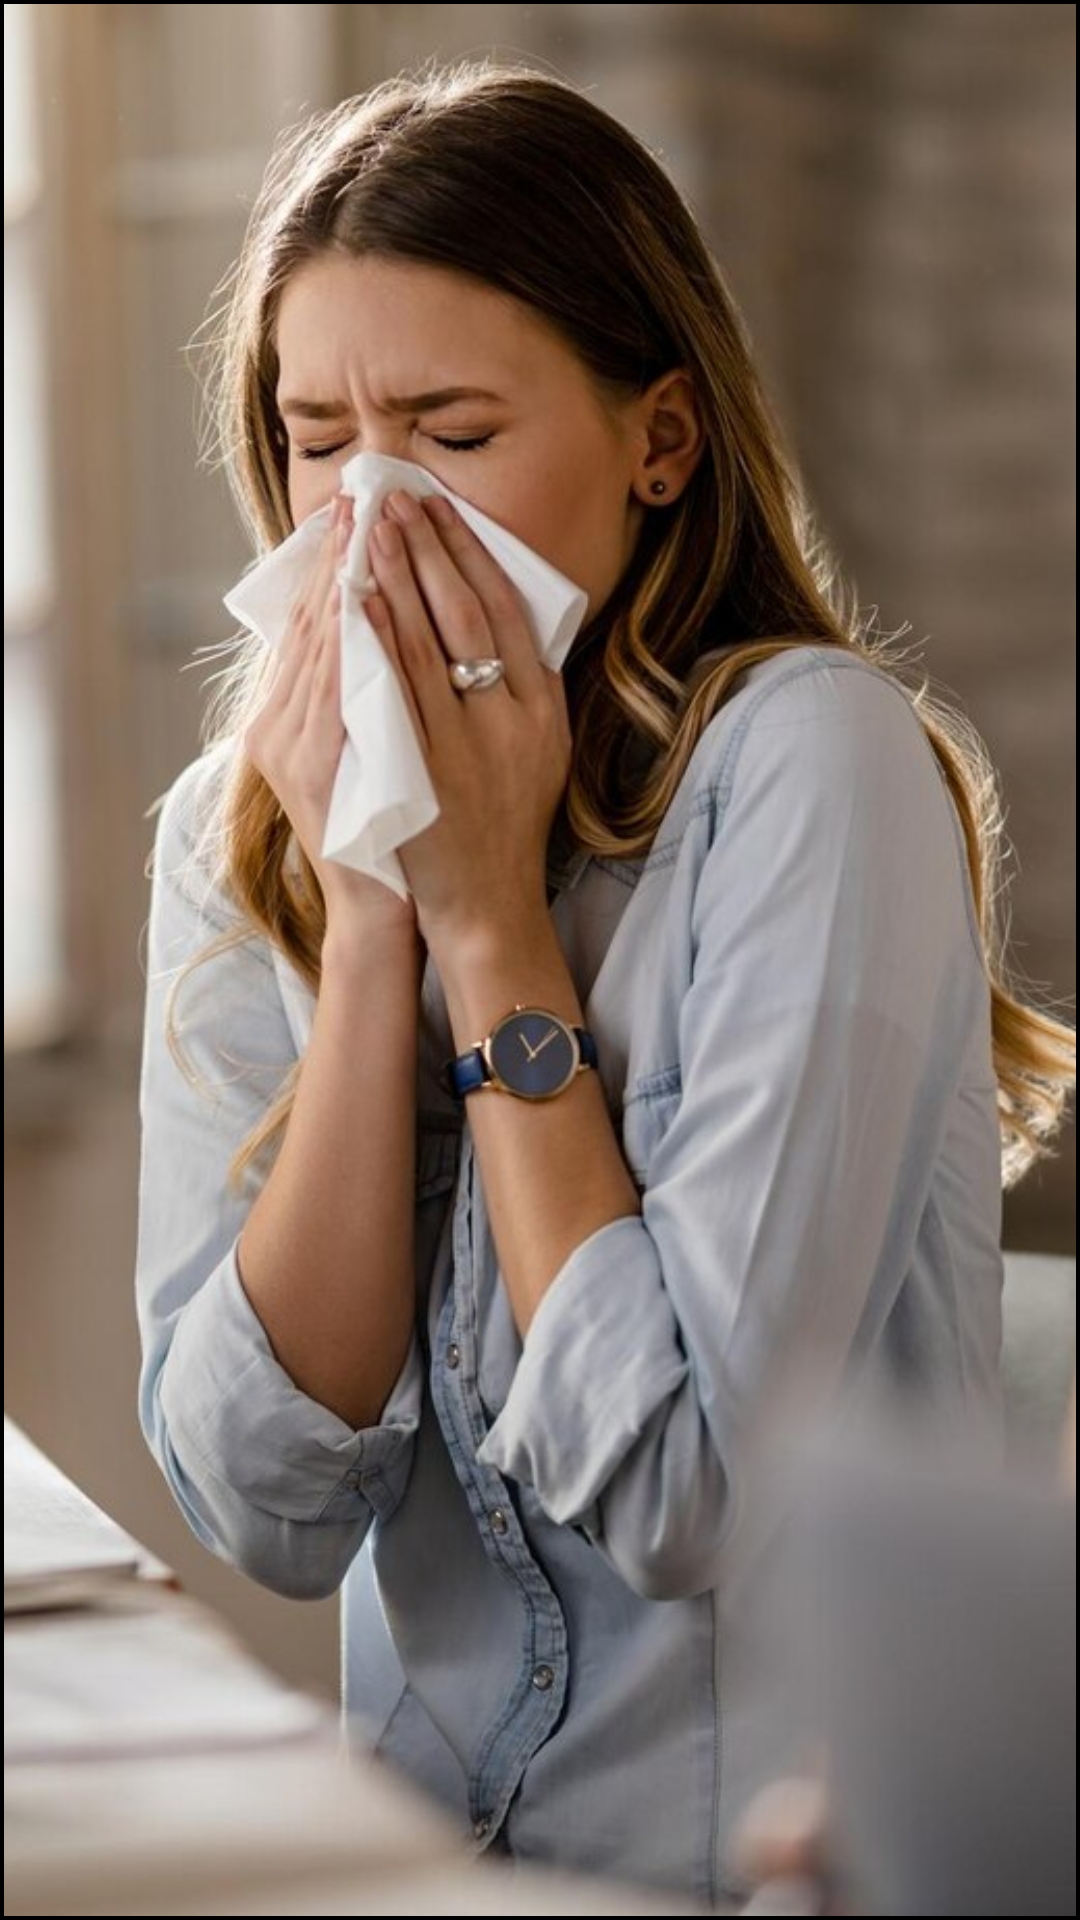 बदलते मौसम में सीजनल एलर्जी जैसे सर्दी-जुकाम, बुखार से लोग परेशान रहते हैं